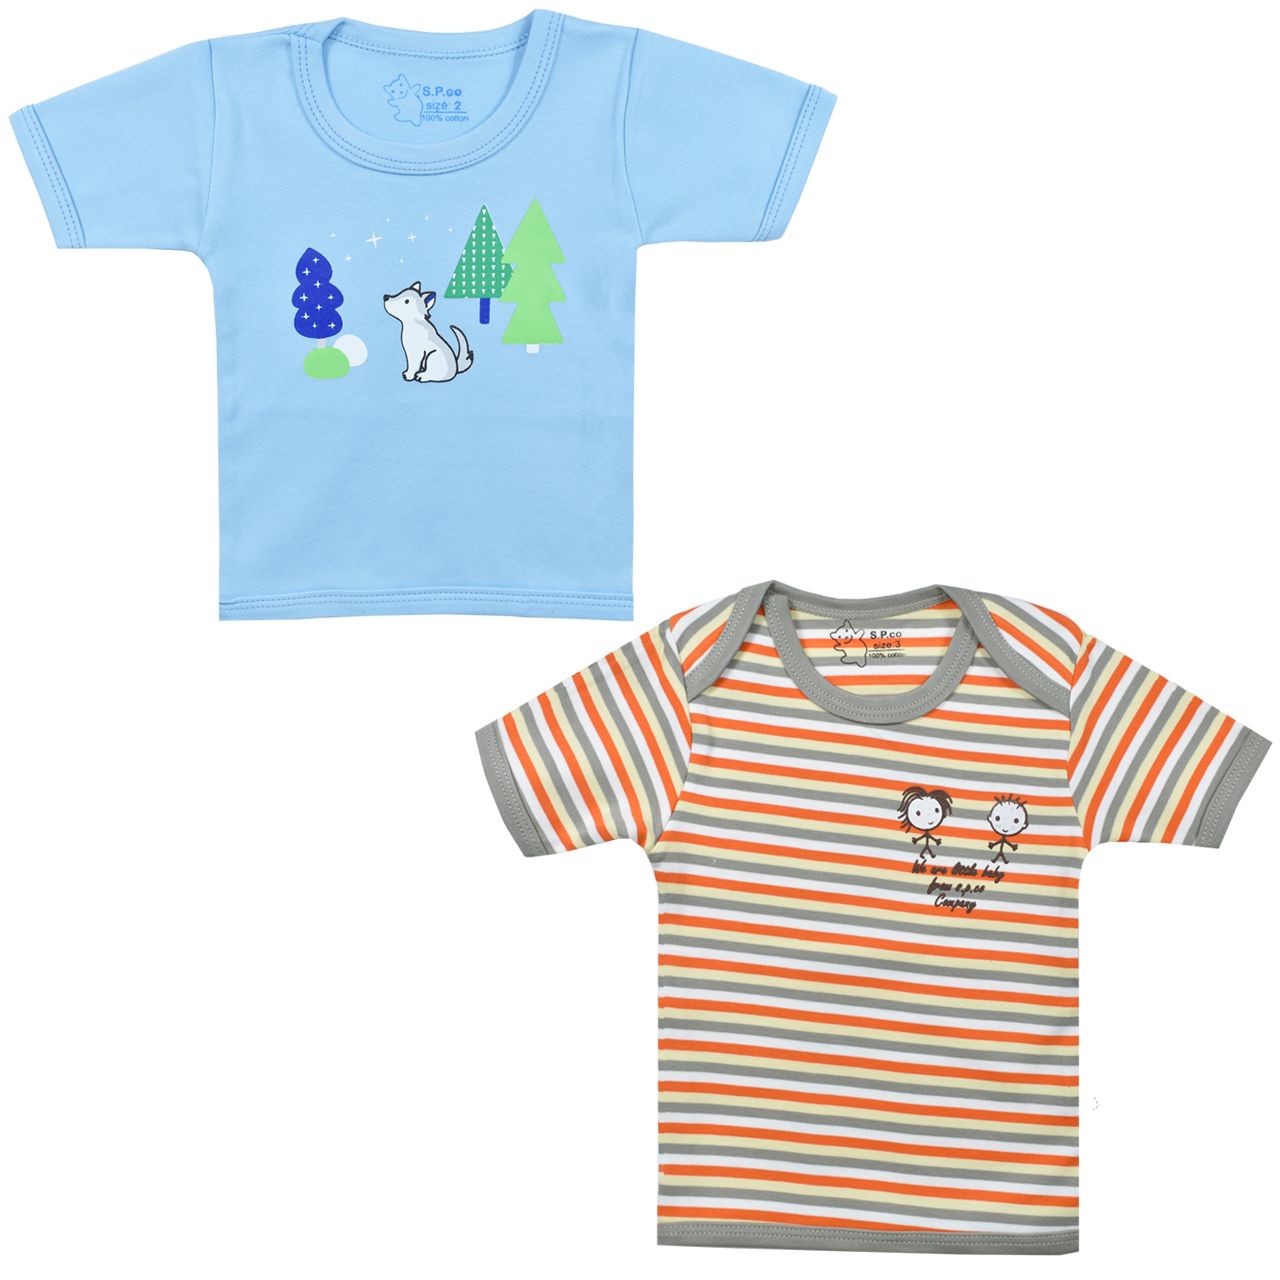 تی شرت آستین کوتاه نوزادی اسپیکو کد 301 -2 بسته دو عددی